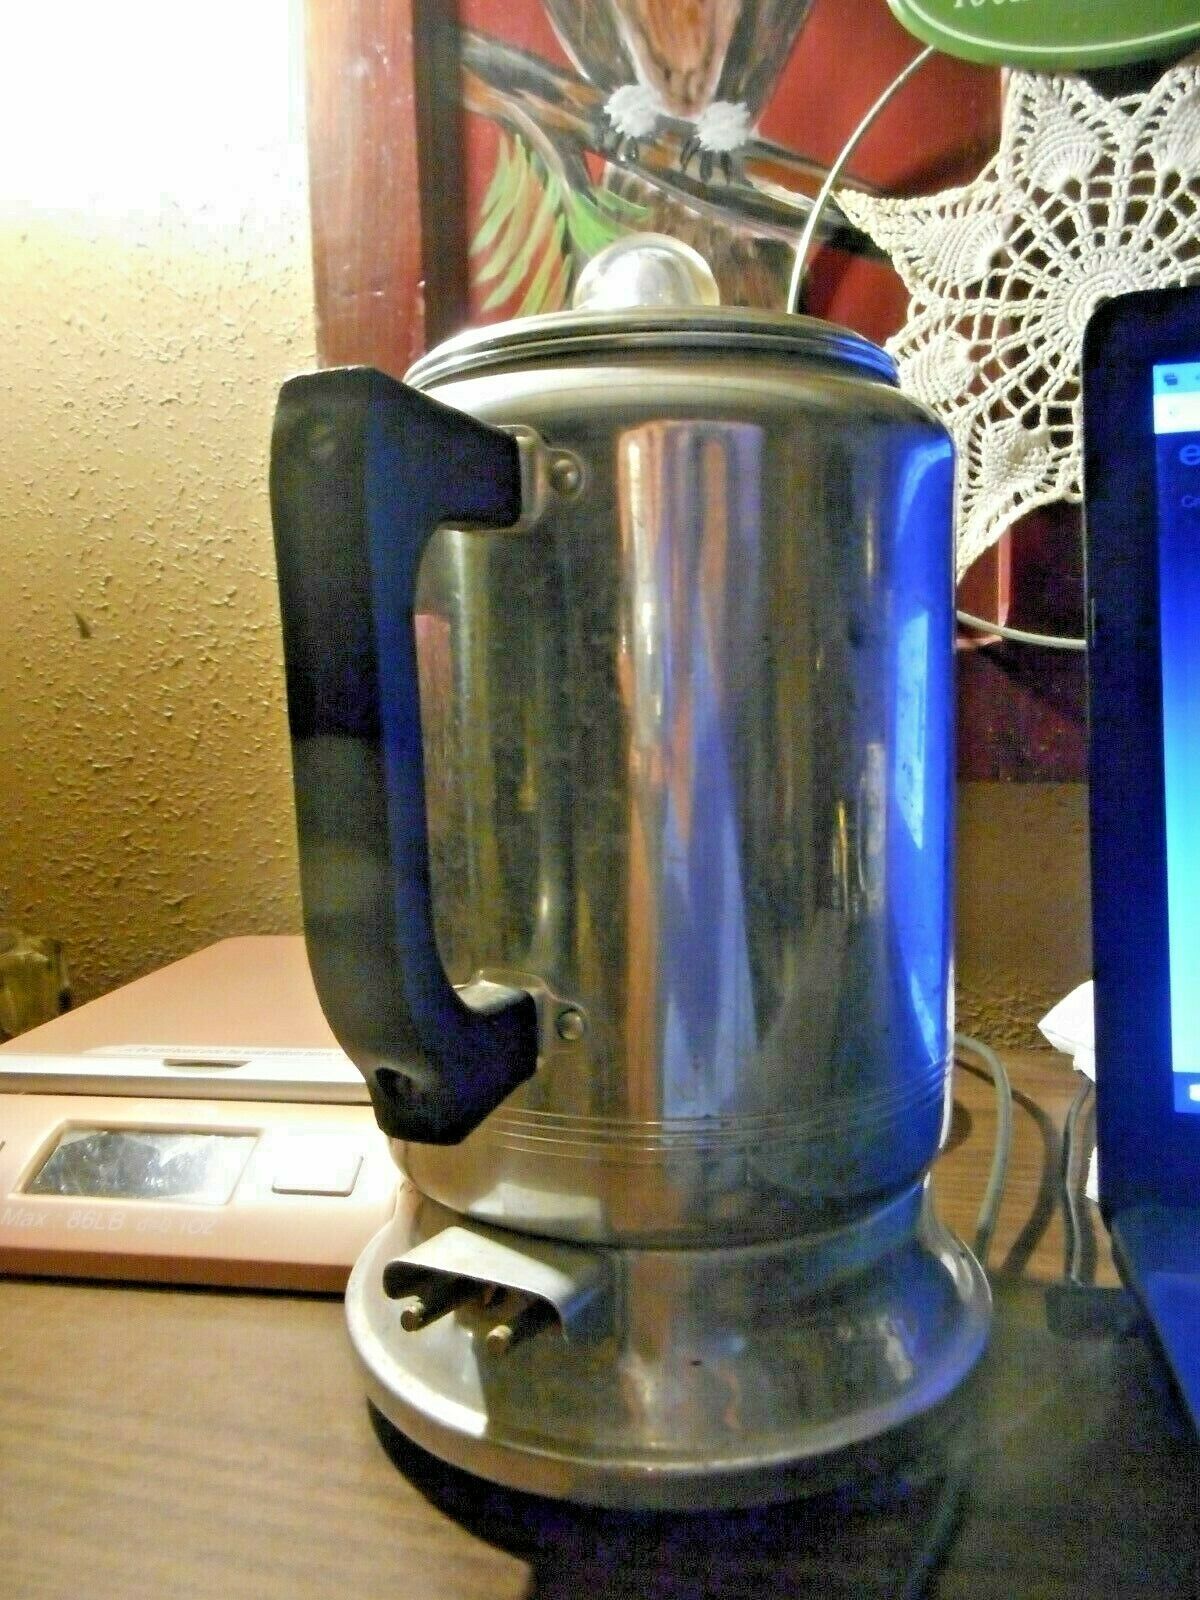 Vintage Presto Coffee Percolator KK01-B PARTS POT Works in Good Condition 